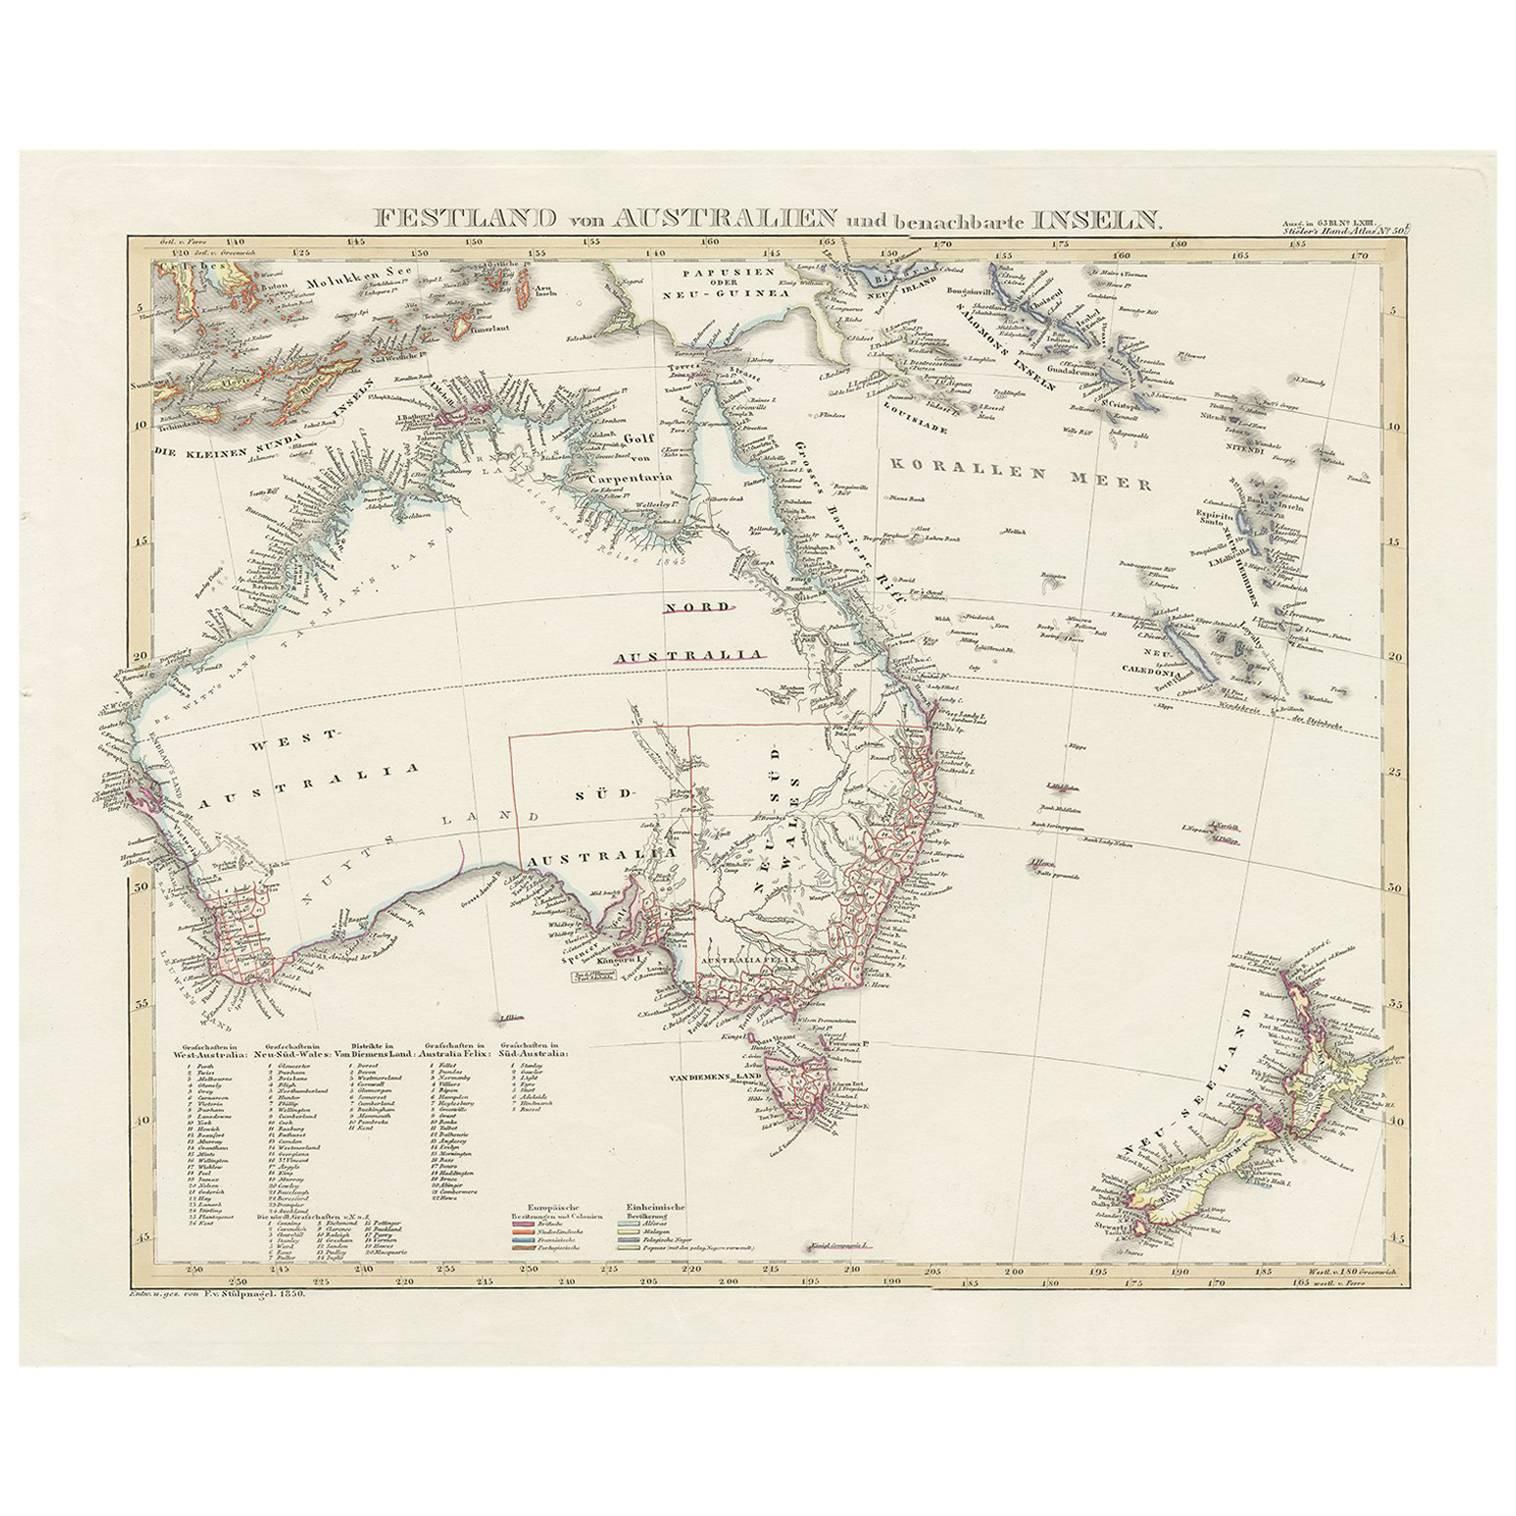 Antique Map of Australia and surrounding Islands by F. von Stülpnagel, 1850